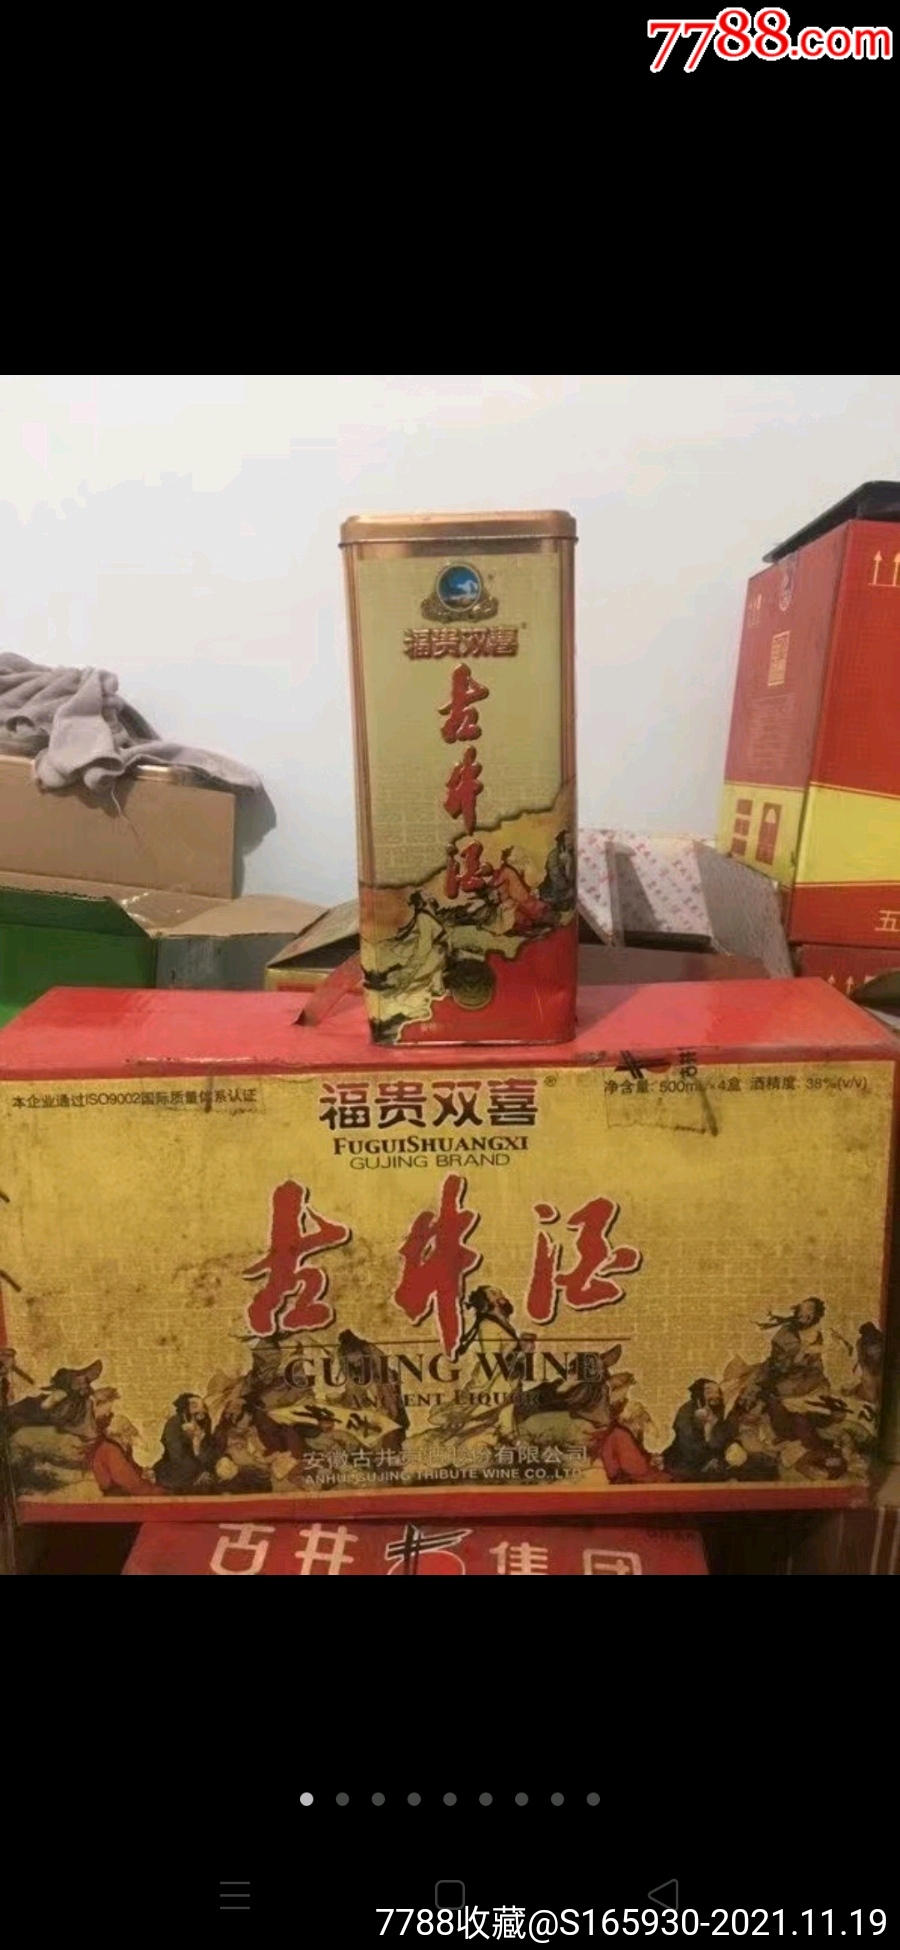 古井贡酒铁盒图片